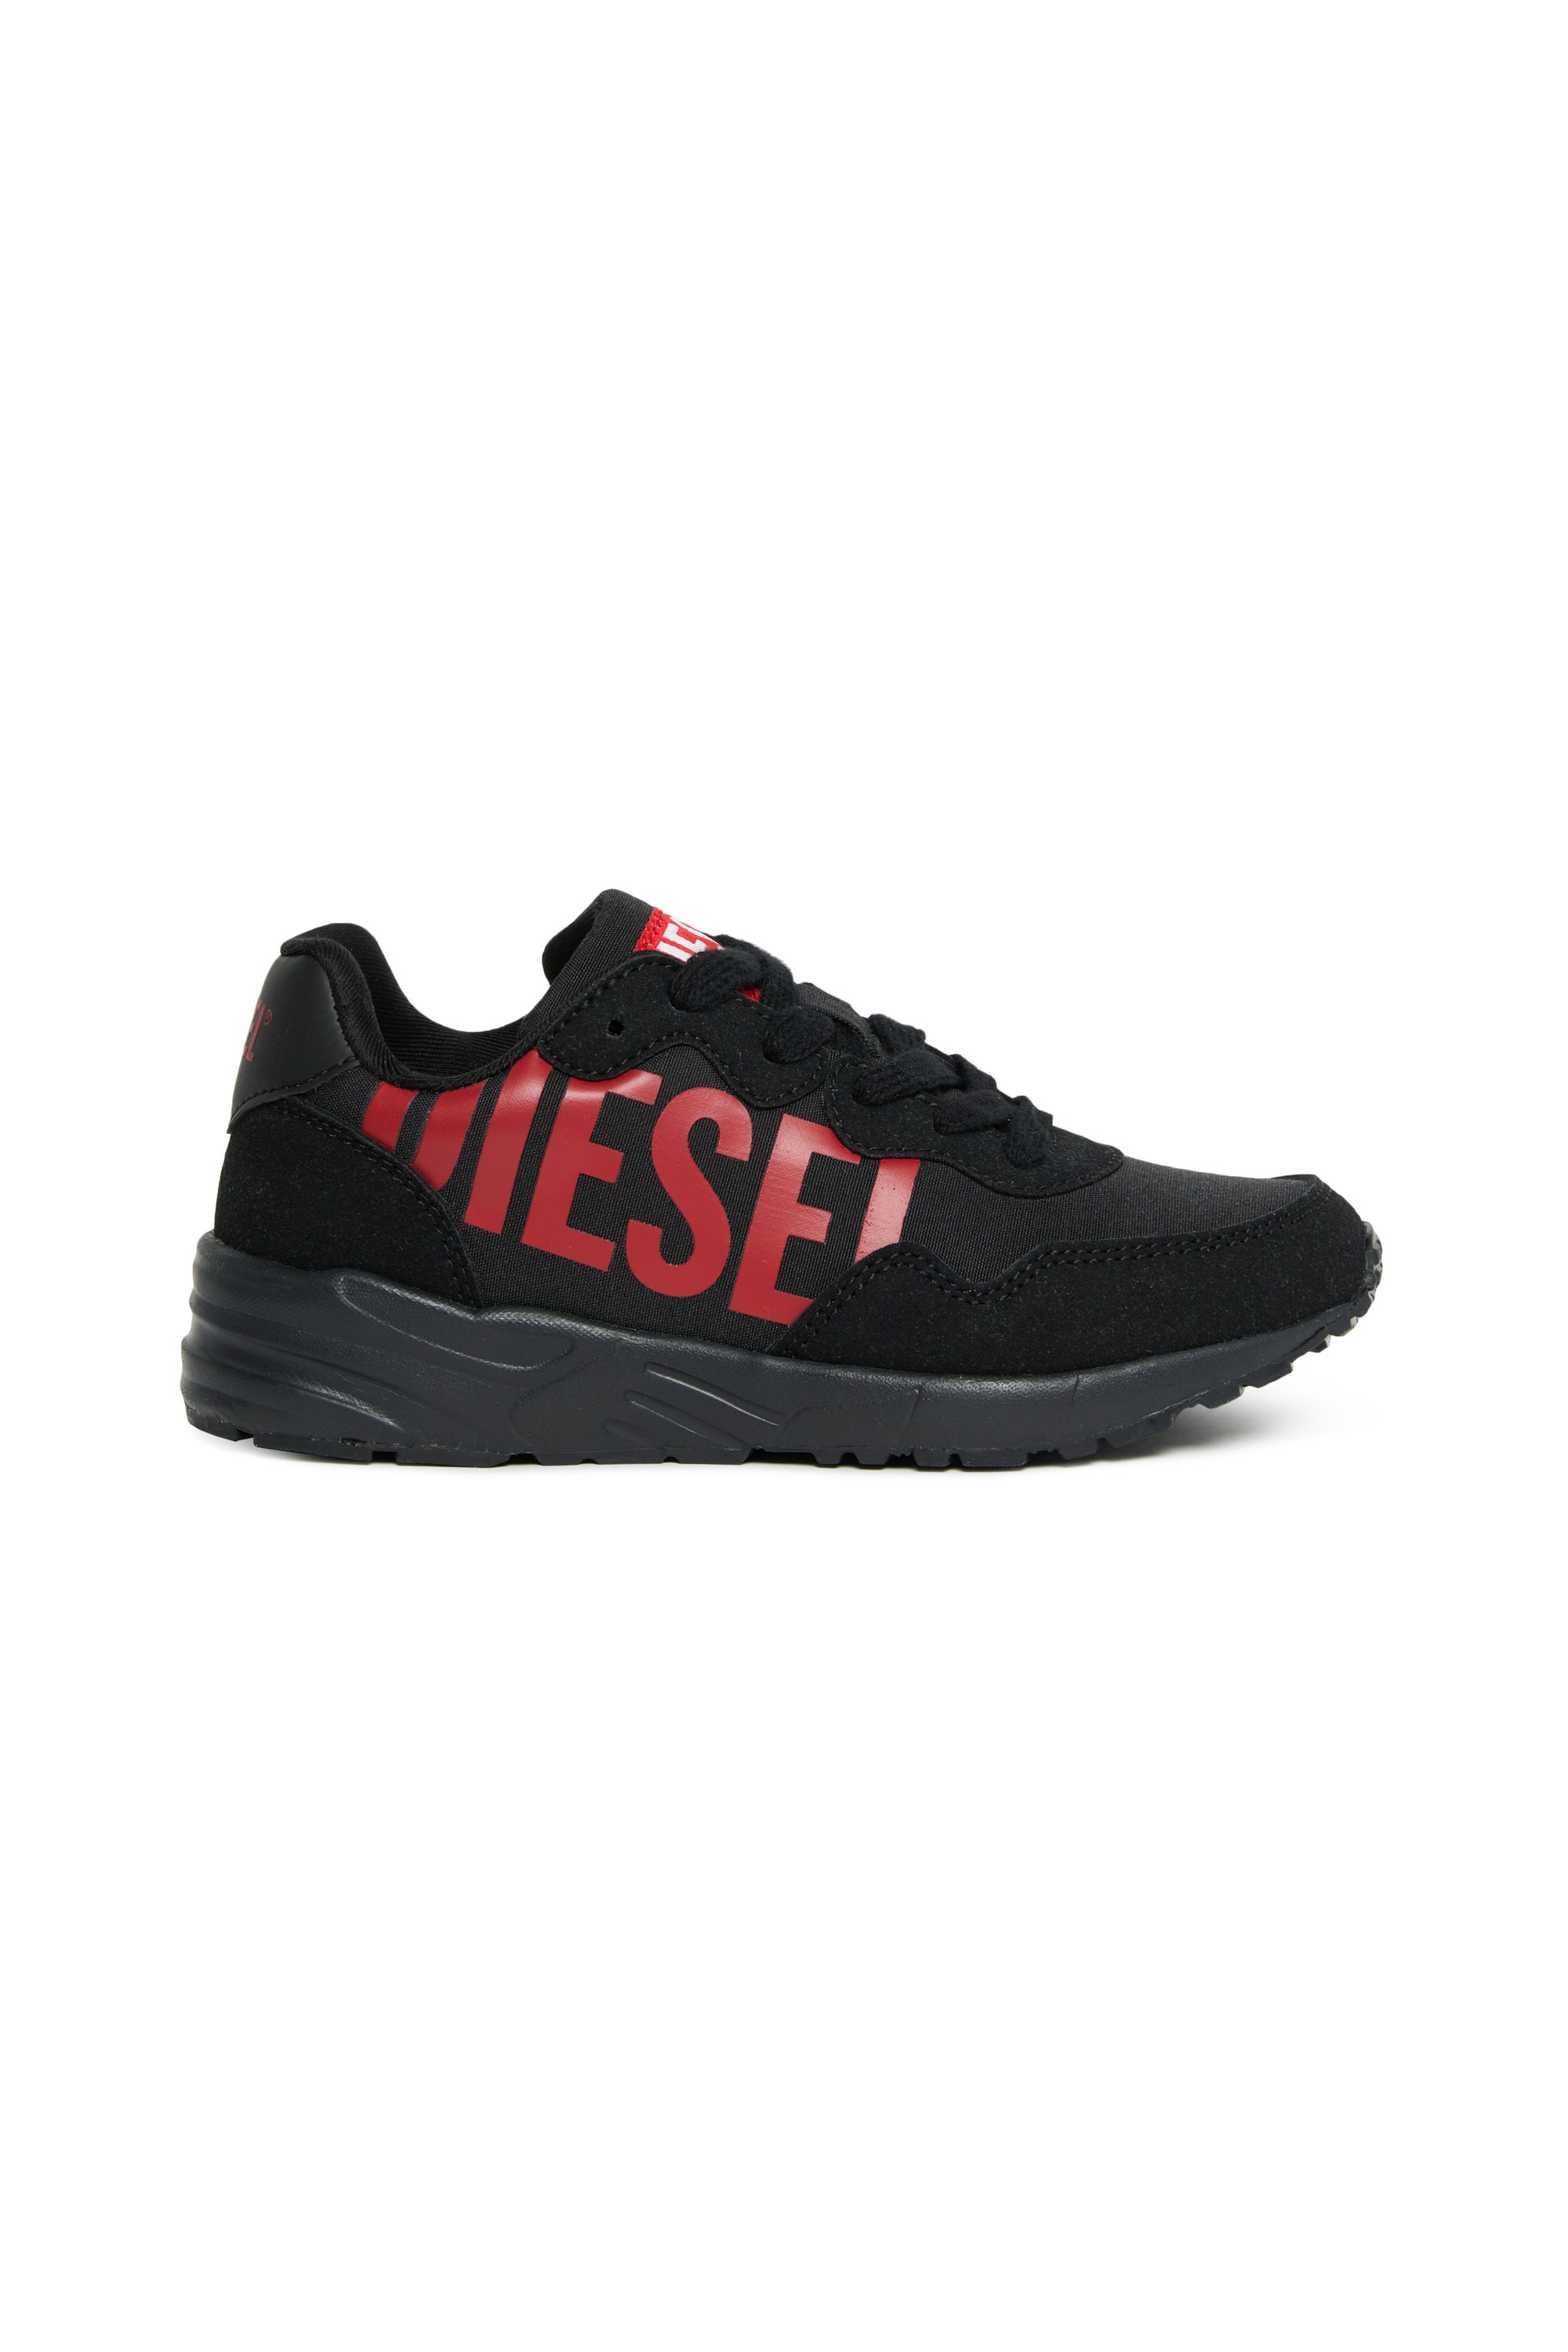 Diesel - Sneakers aus Nylon mit glänzendem Diesel-Print - Schuhe - Unisex - Bunt